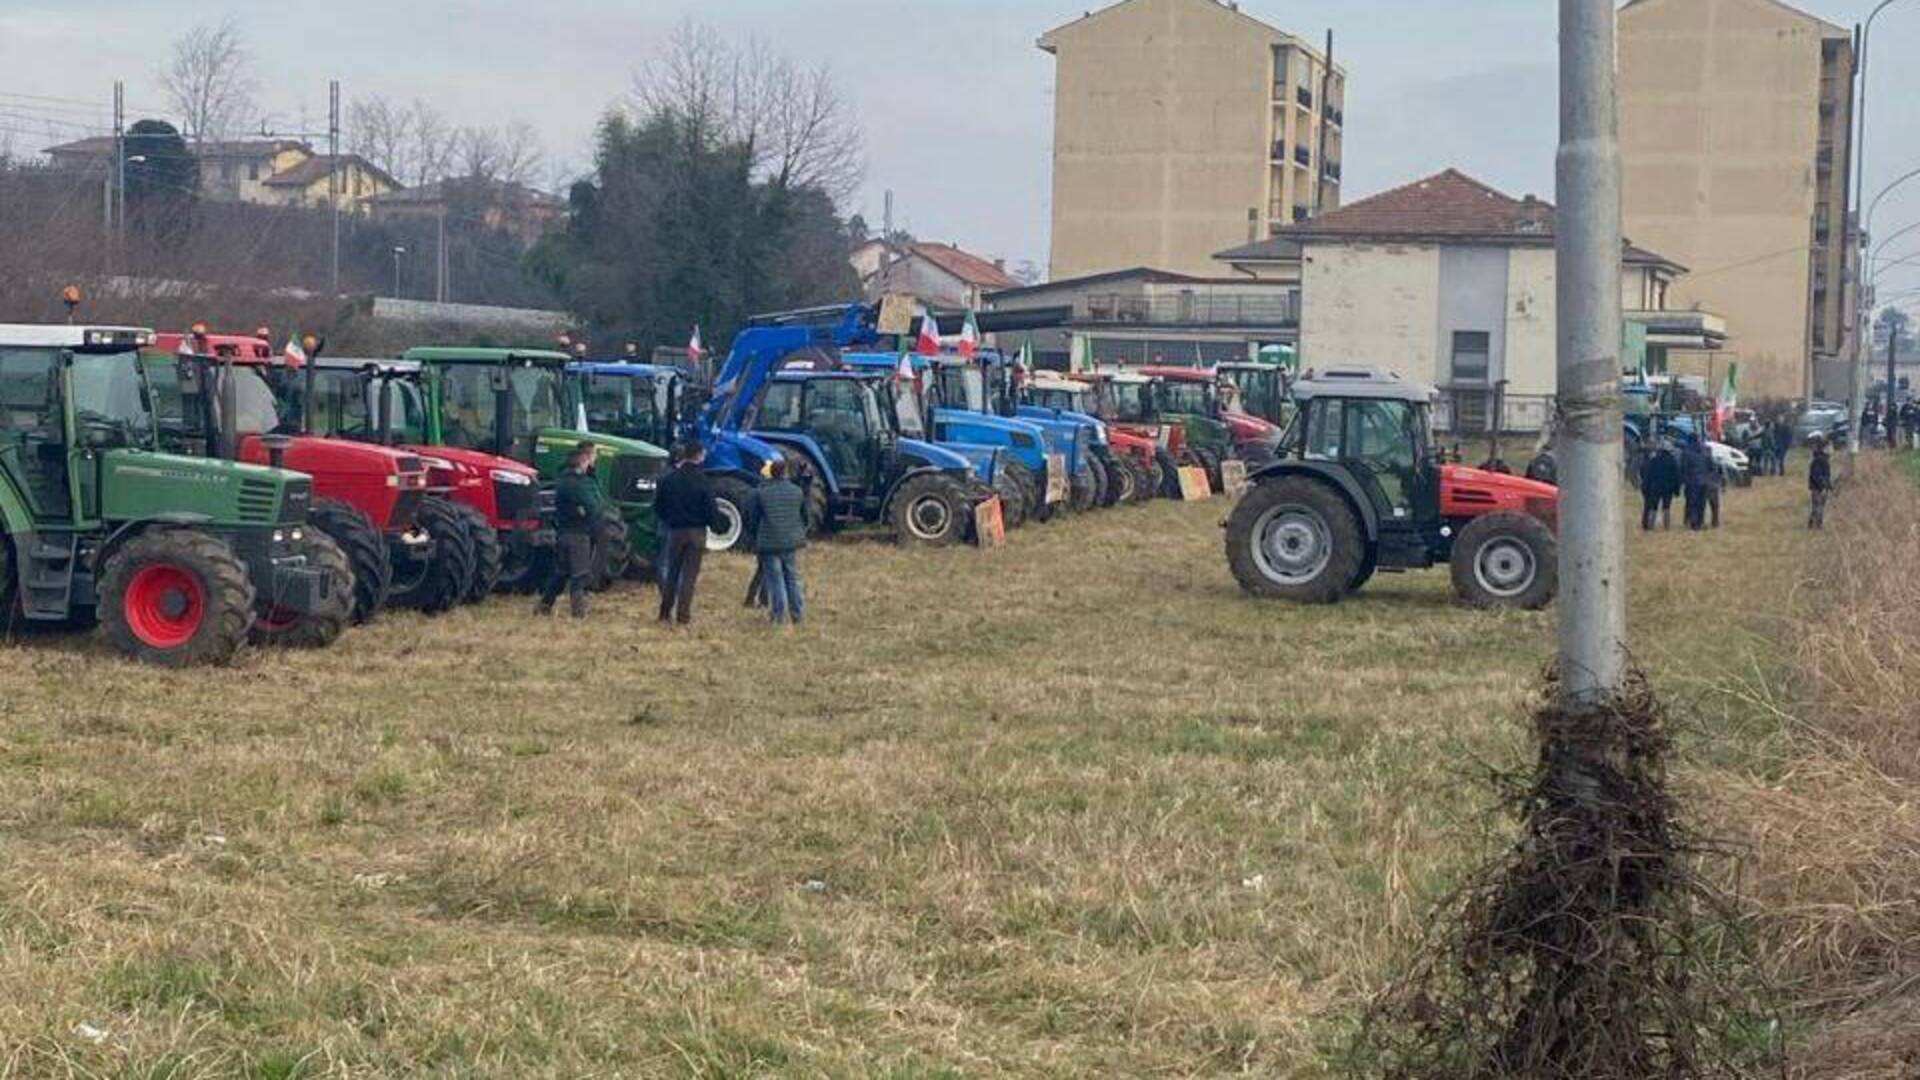 Tradate, la protesta dei trattori andrà avanti sino a domenica nei pressi della Varesina